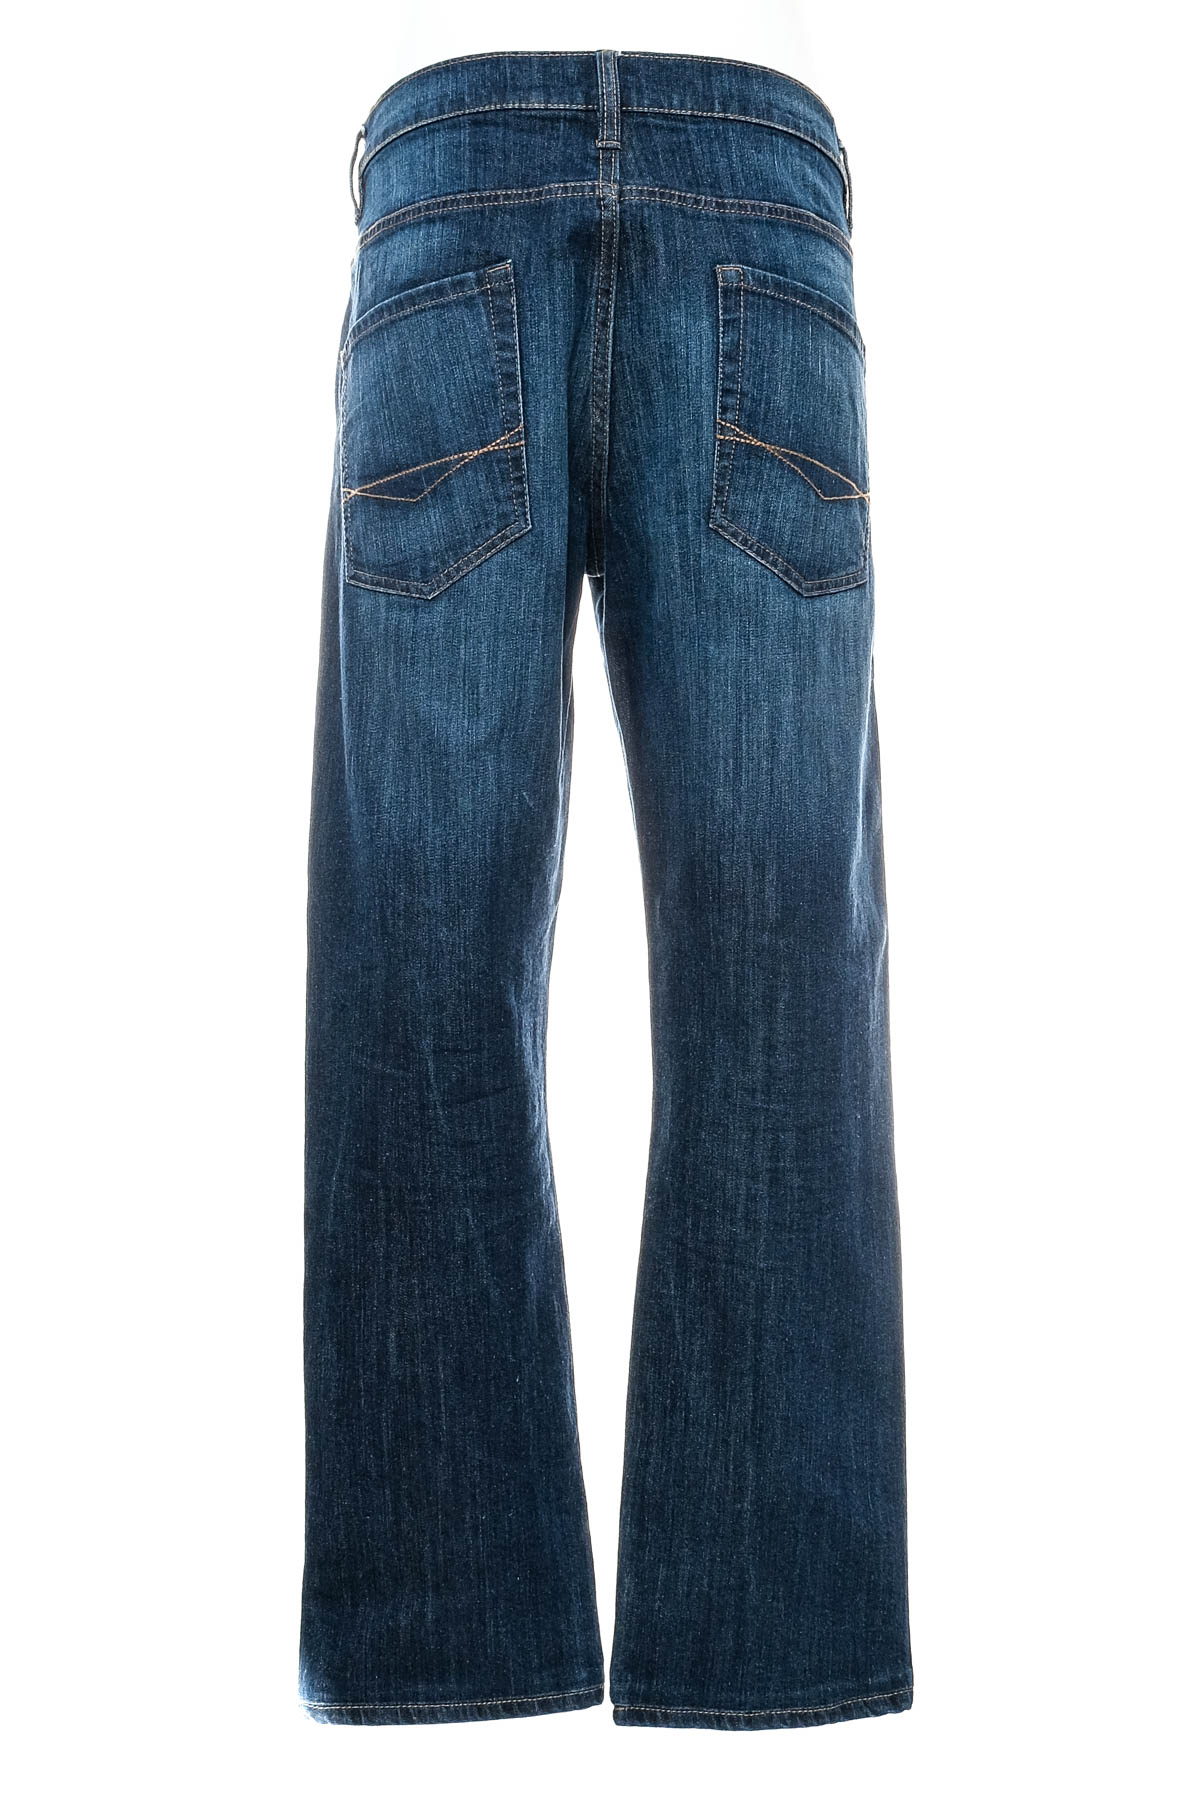 Men's jeans - Watsons - 1